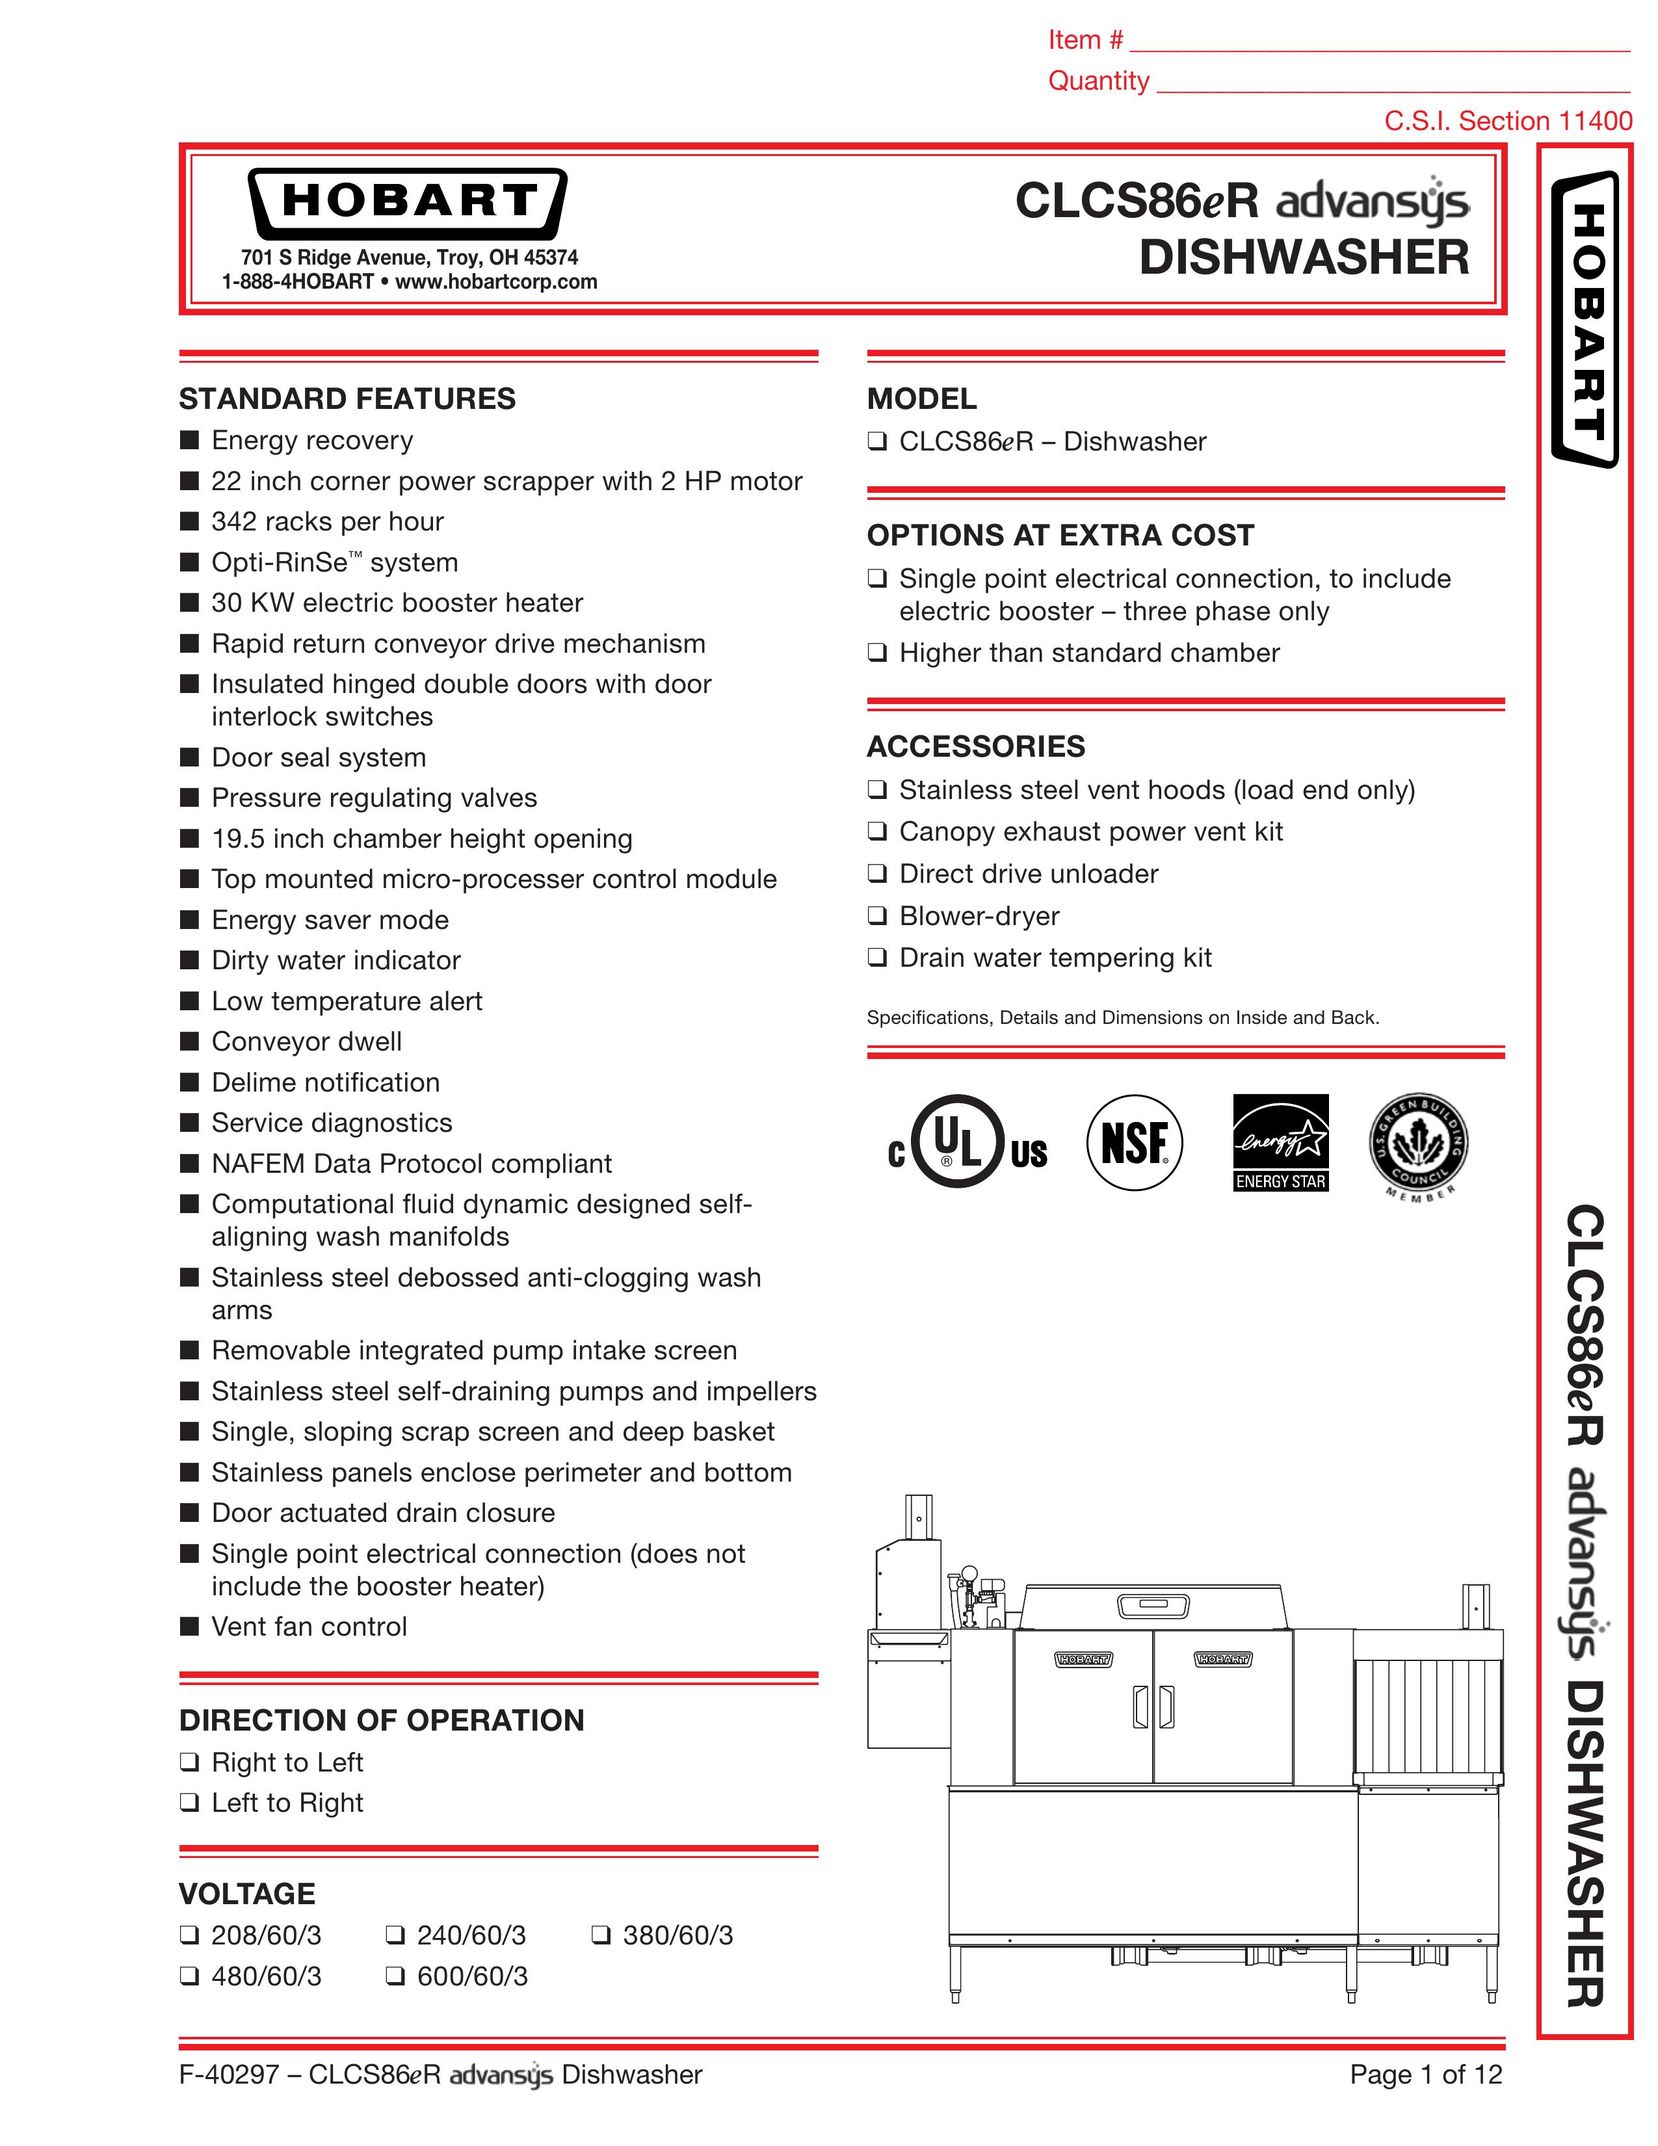 Hobart CLCS86ER Dishwasher User Manual